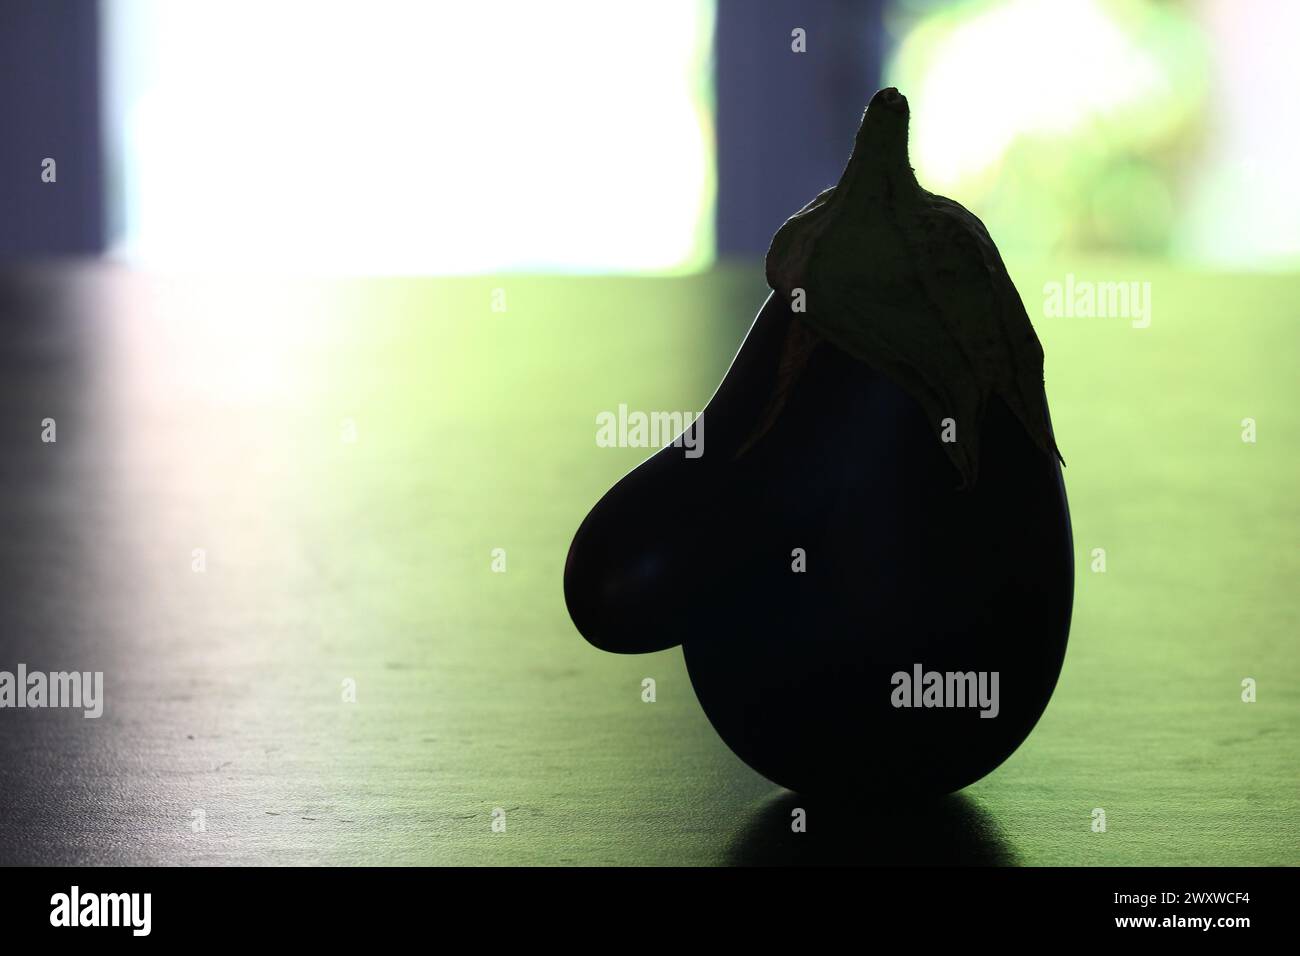 Gegen das Licht erinnert eine Aubergine auf einer flachen Oberfläche an ein Profil mit einer großen Nase und einem spitzen Hut (Montpellier, Frankreich). Stockfoto